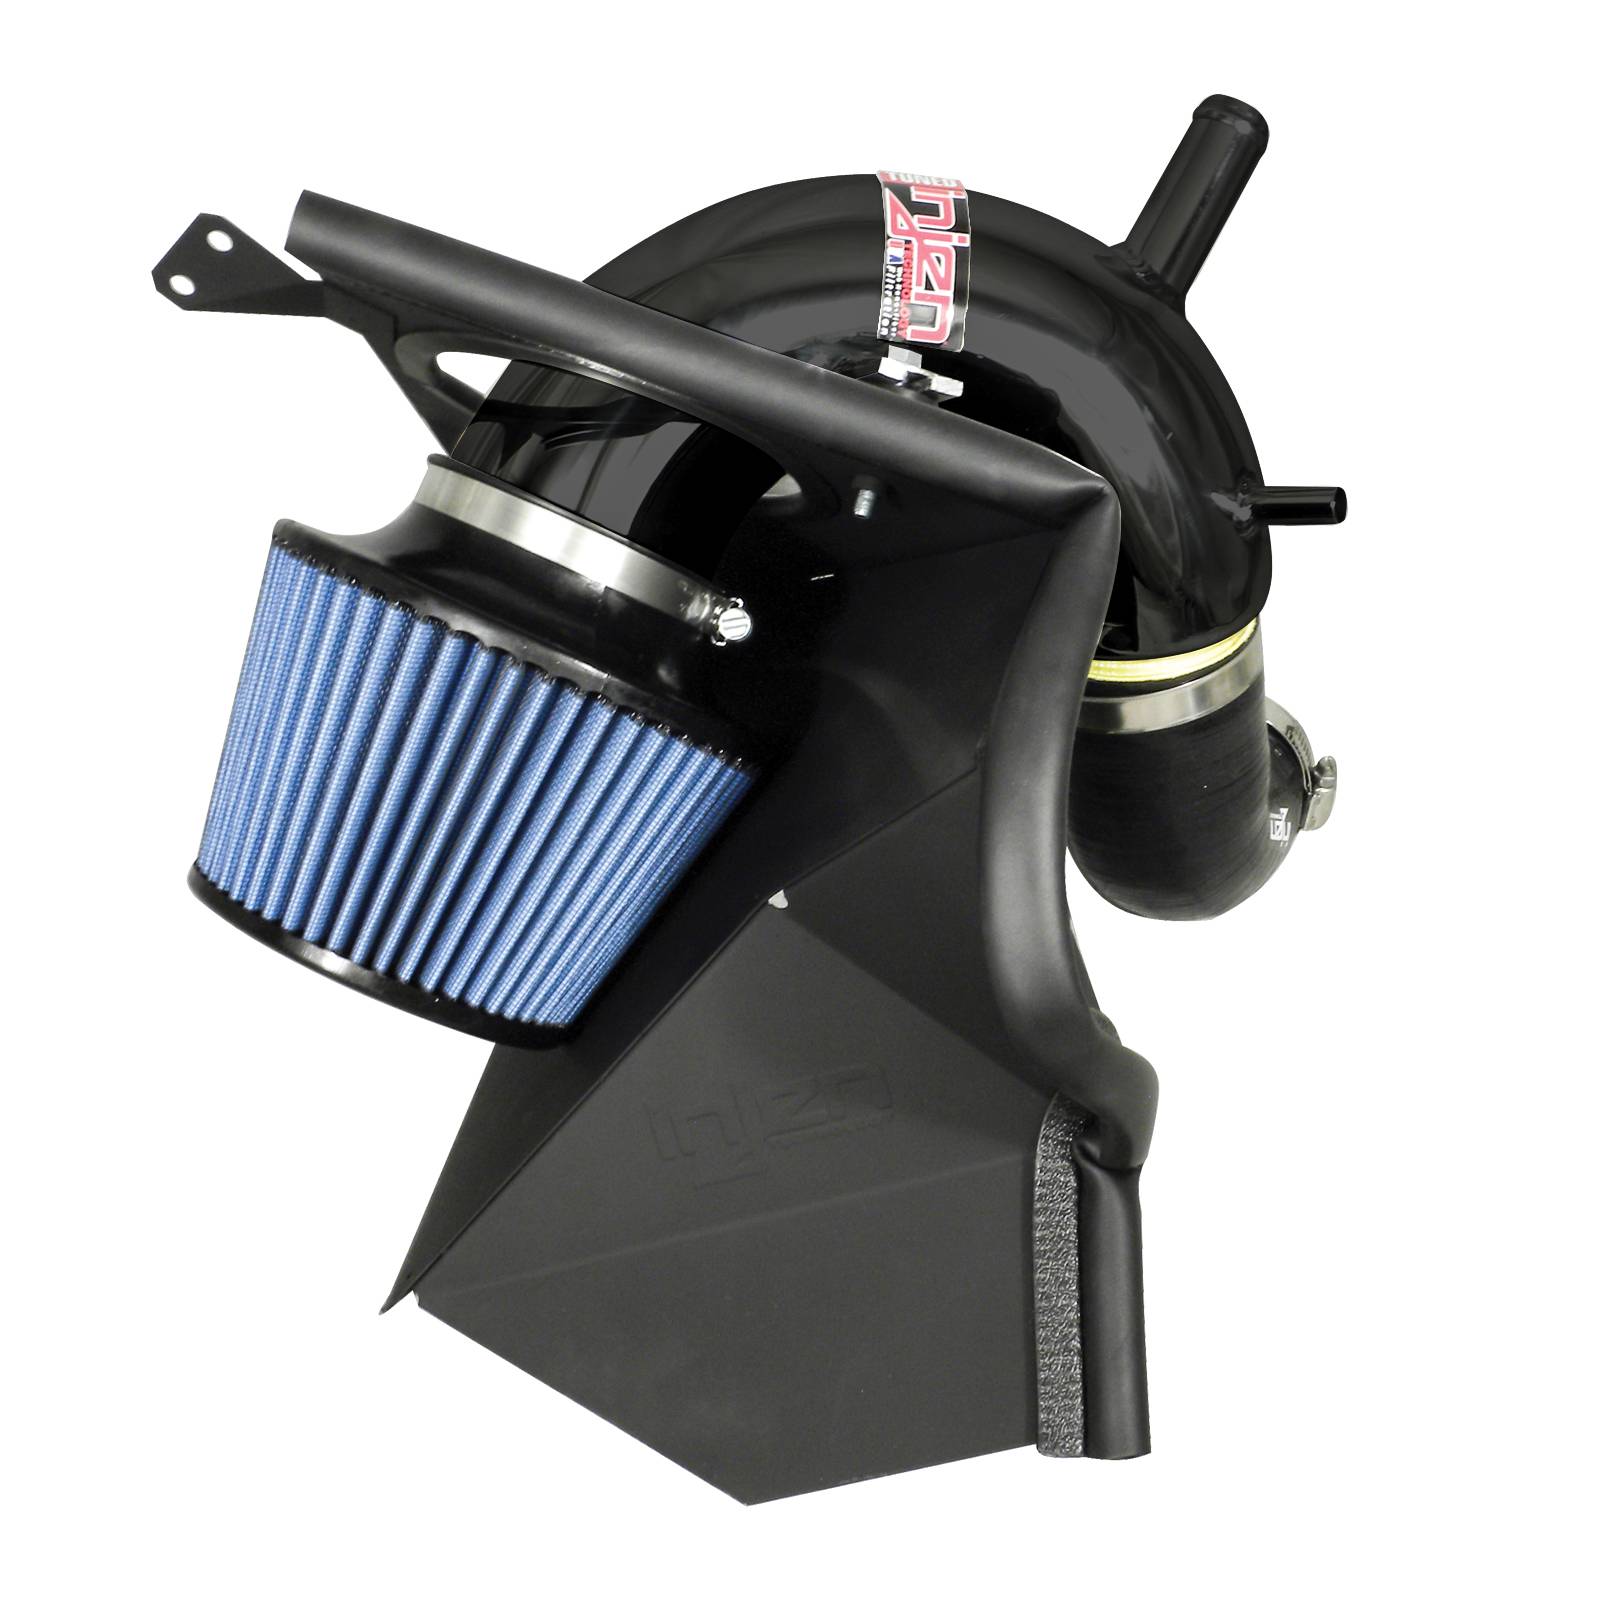 Injen Sp Short Ram Cold Air Intake System - Black (+9 Hp & +12 Lb-Ft)